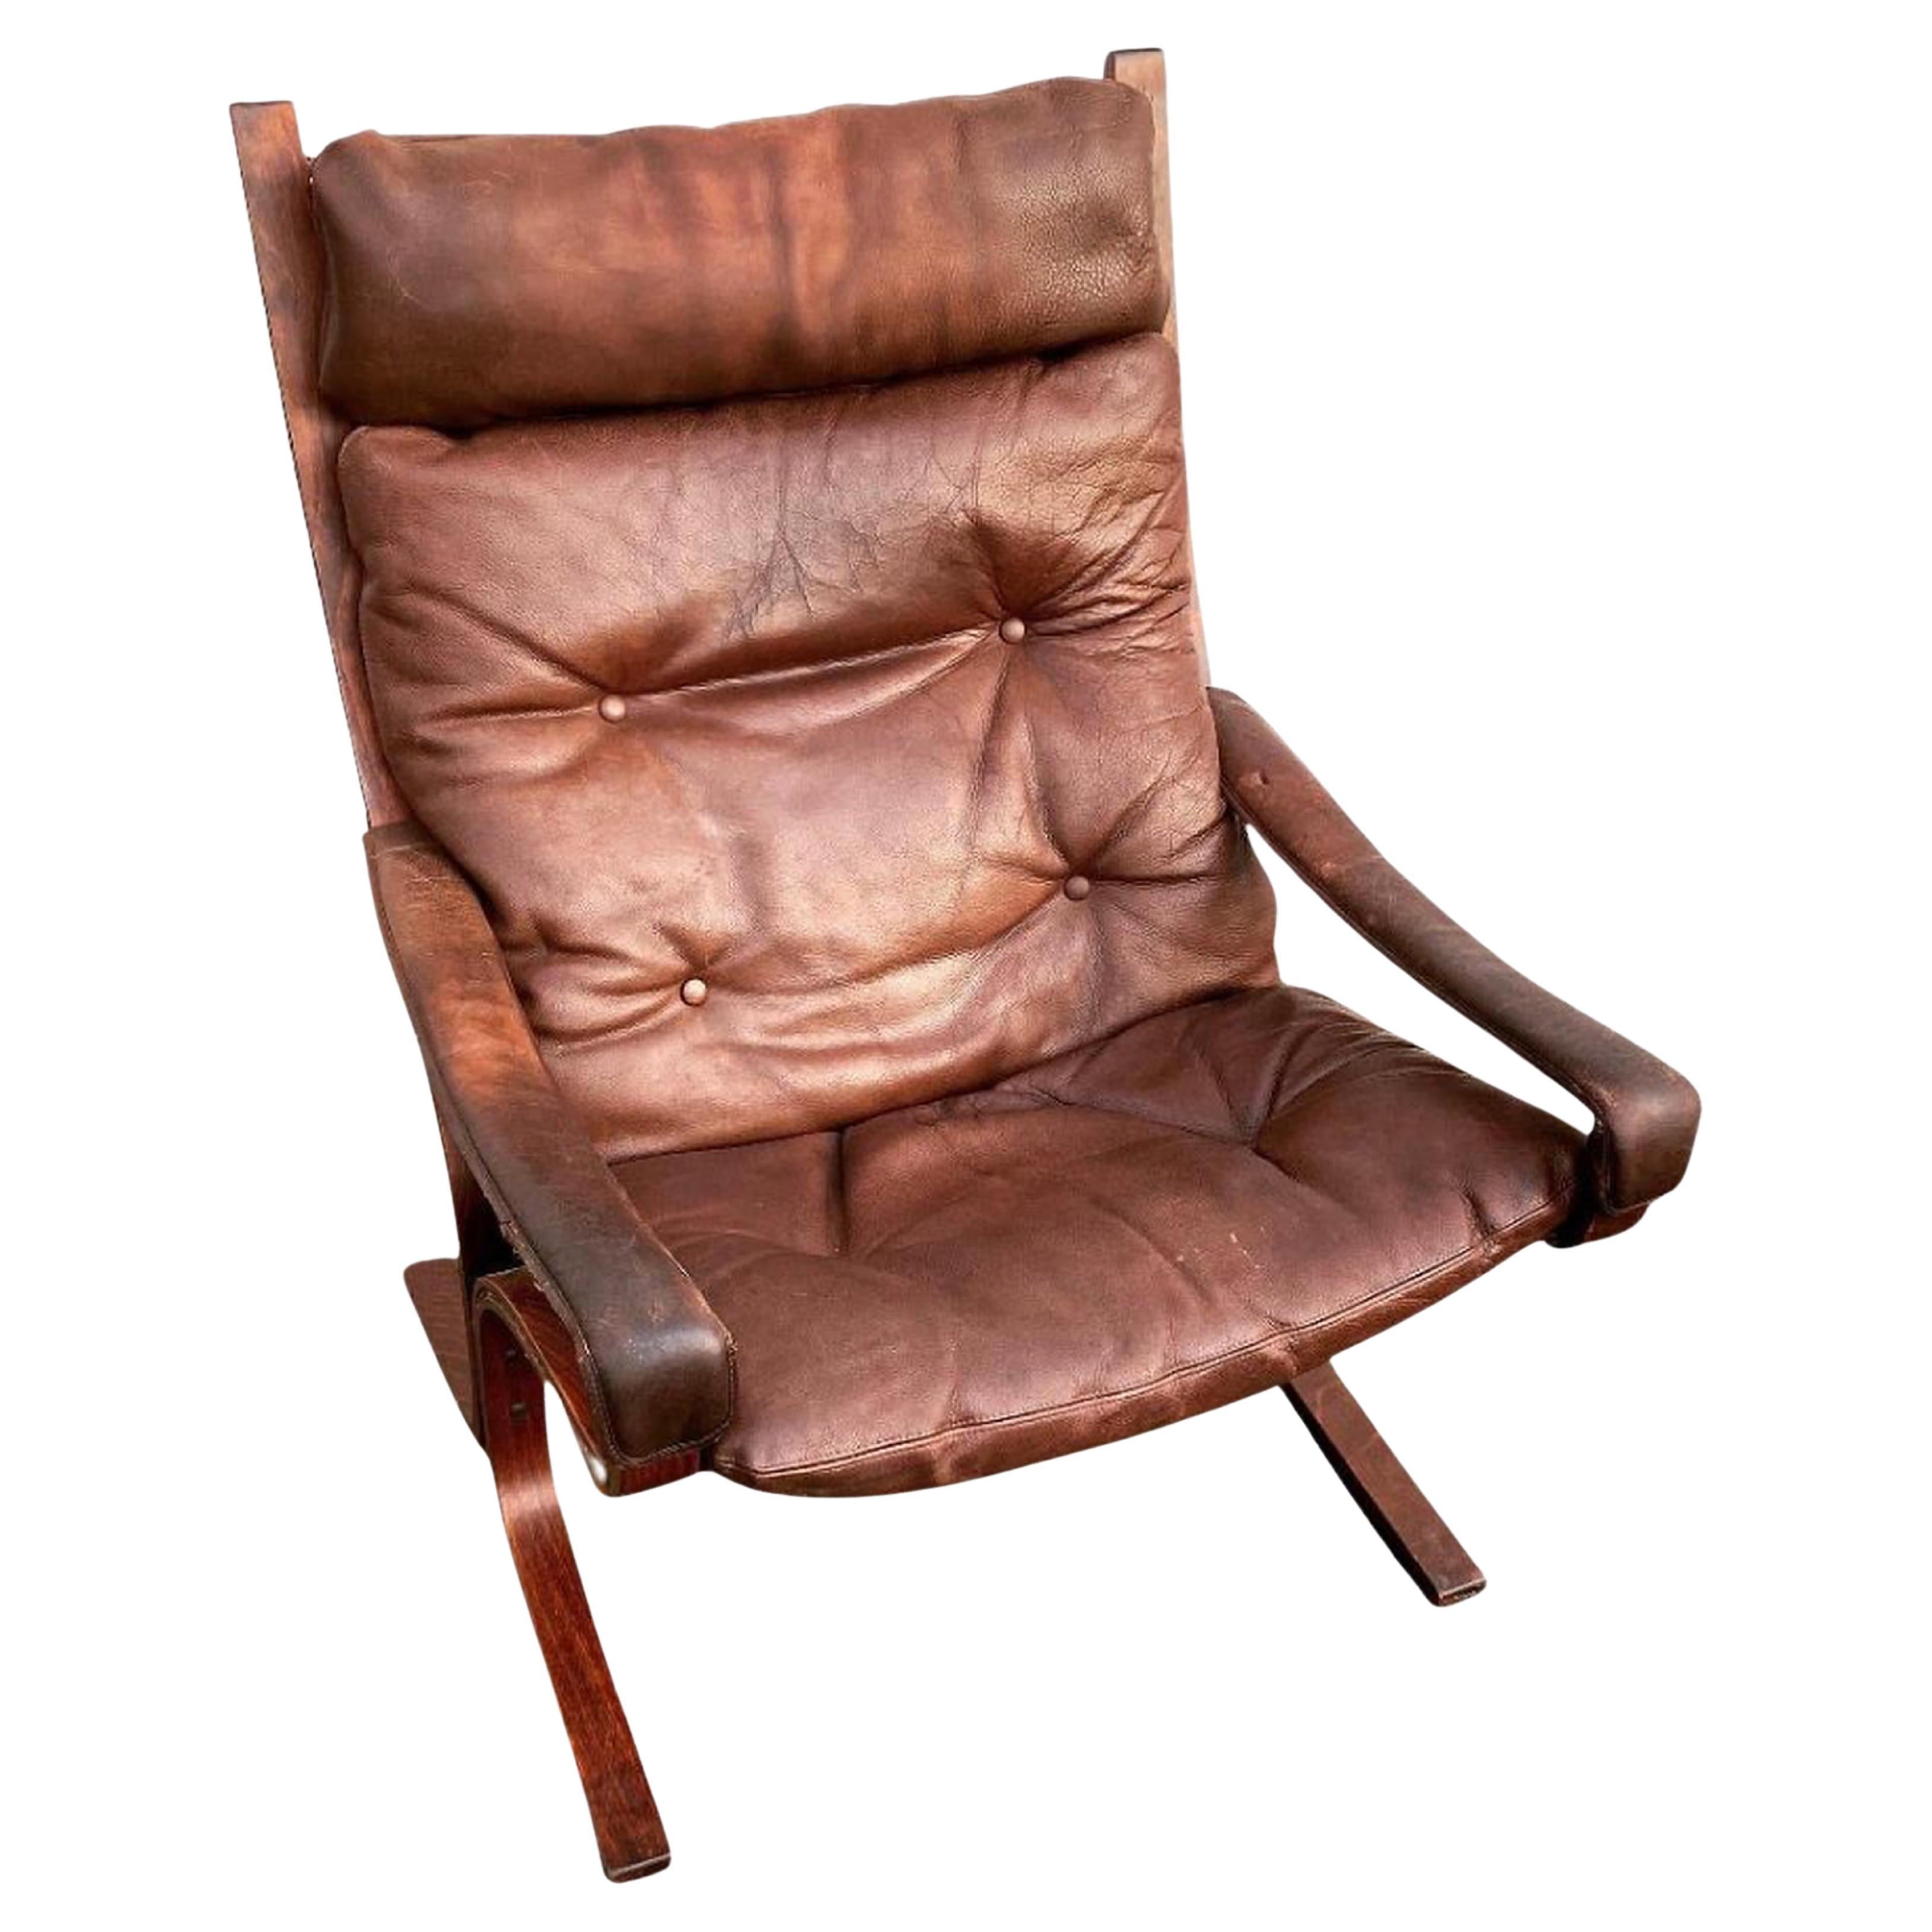 Ingmar Relling "Siesta" lounge chair